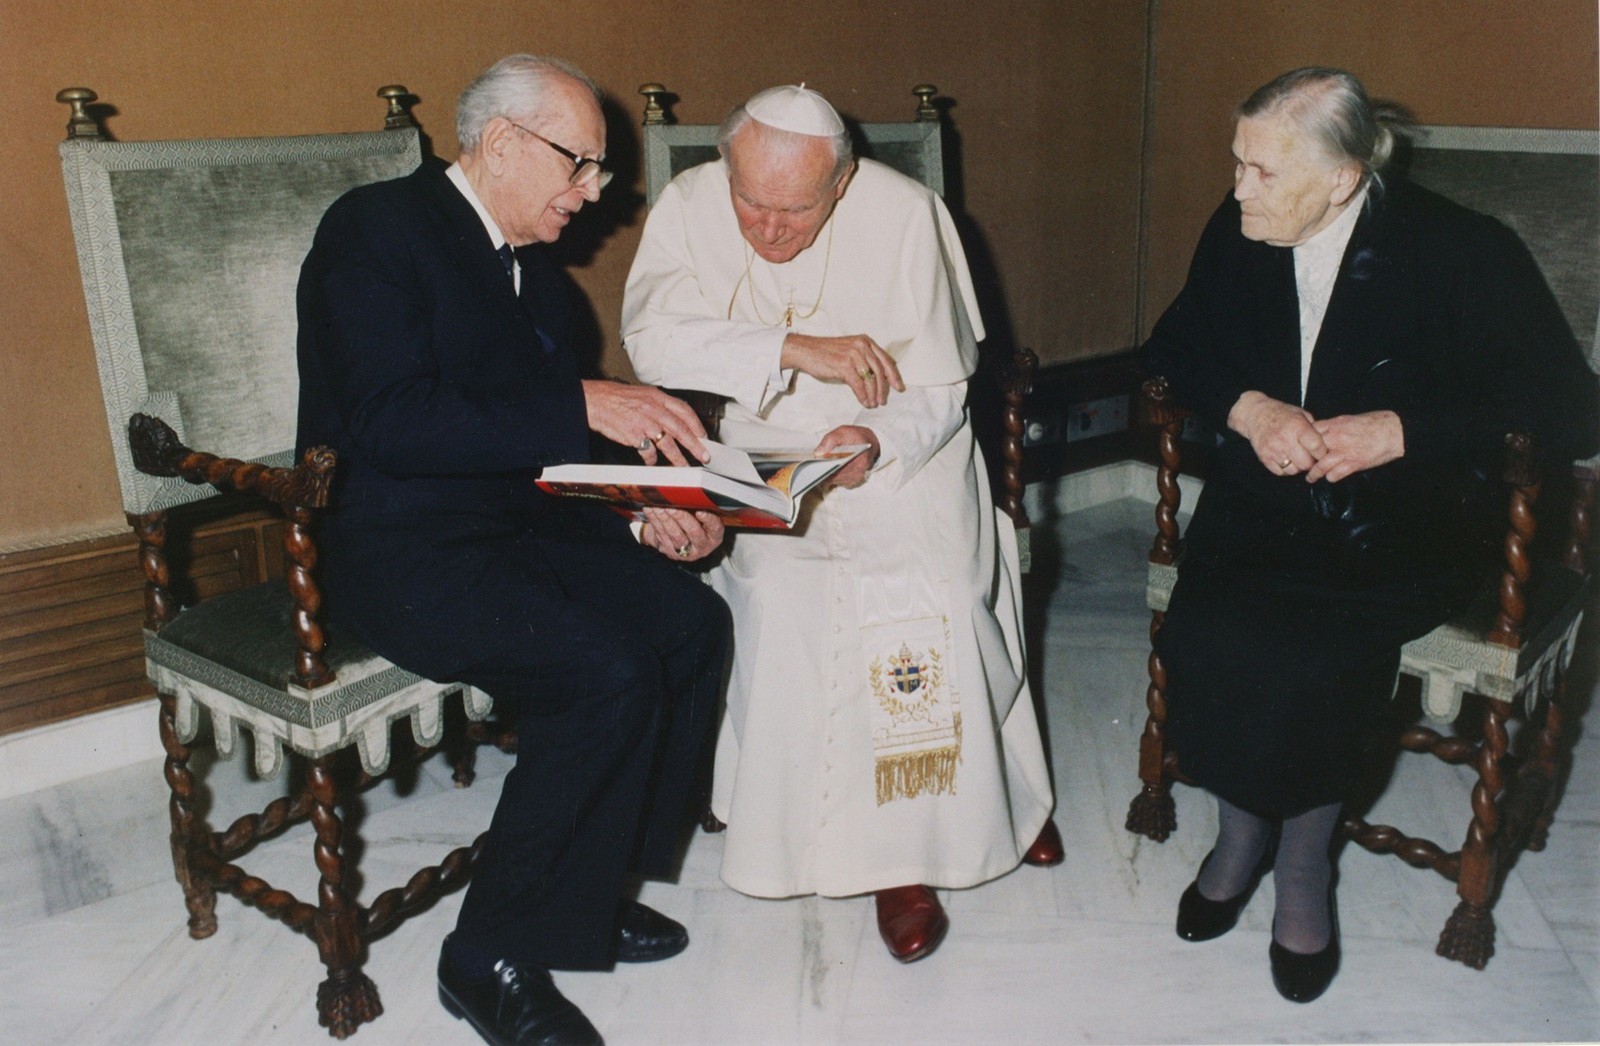 Встреча академика Дмитрия Лихачева и Святого Иоанна Павла II — Папа Римский, предстоятель Римско-католической церкви (с 16 октября 1978 по 2 апреля 2005 года).